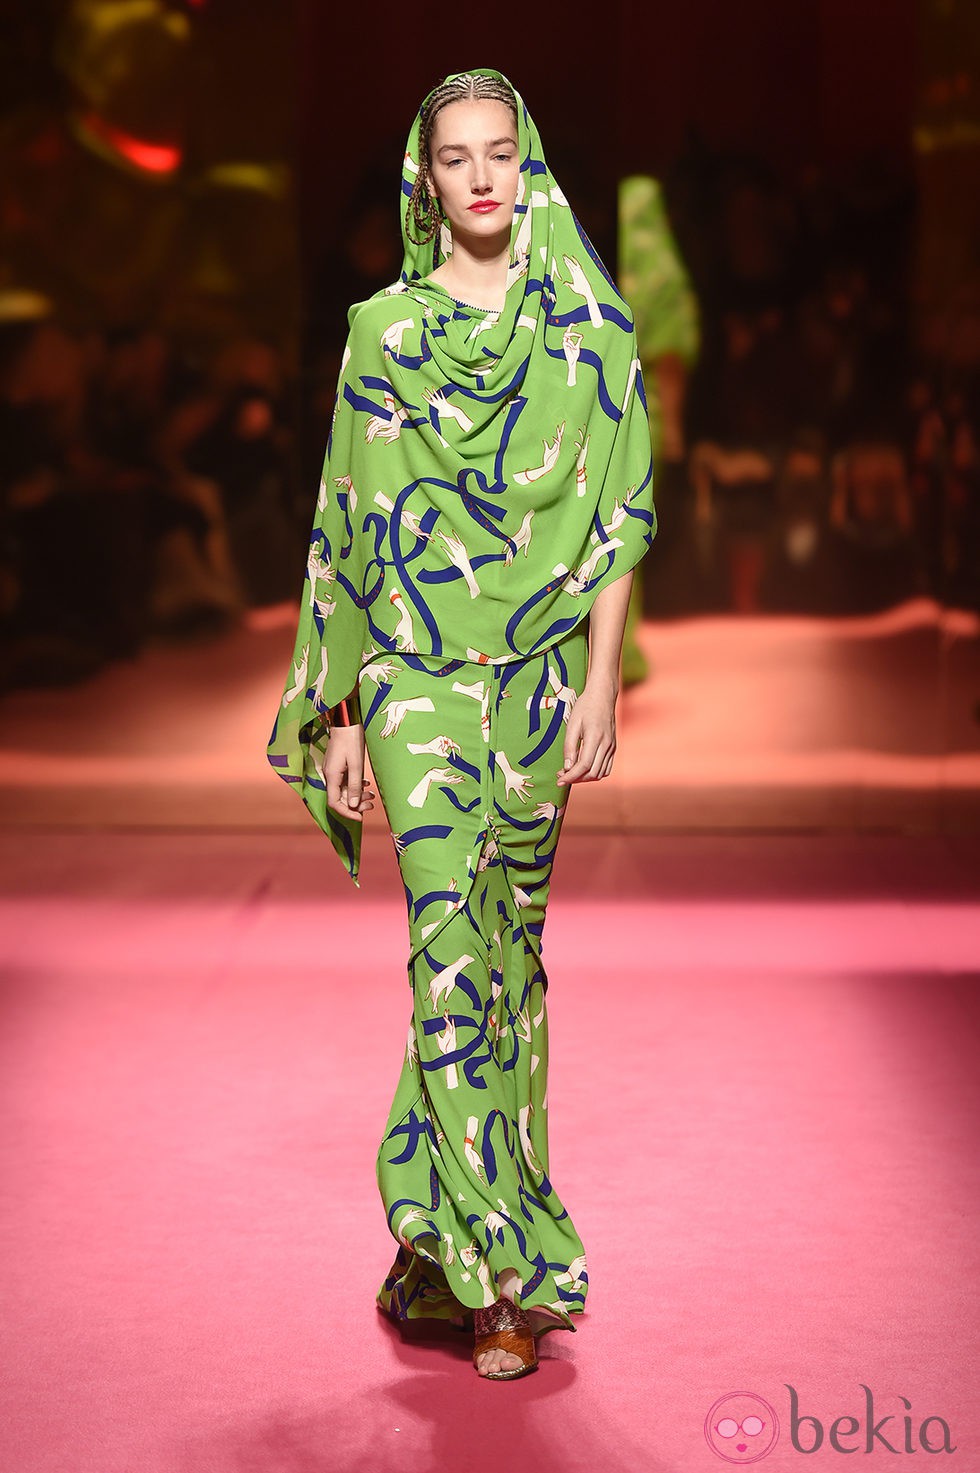 Vestido de Schiaparelli en la Semana de la Alta Costura de París primavera/verano 2015